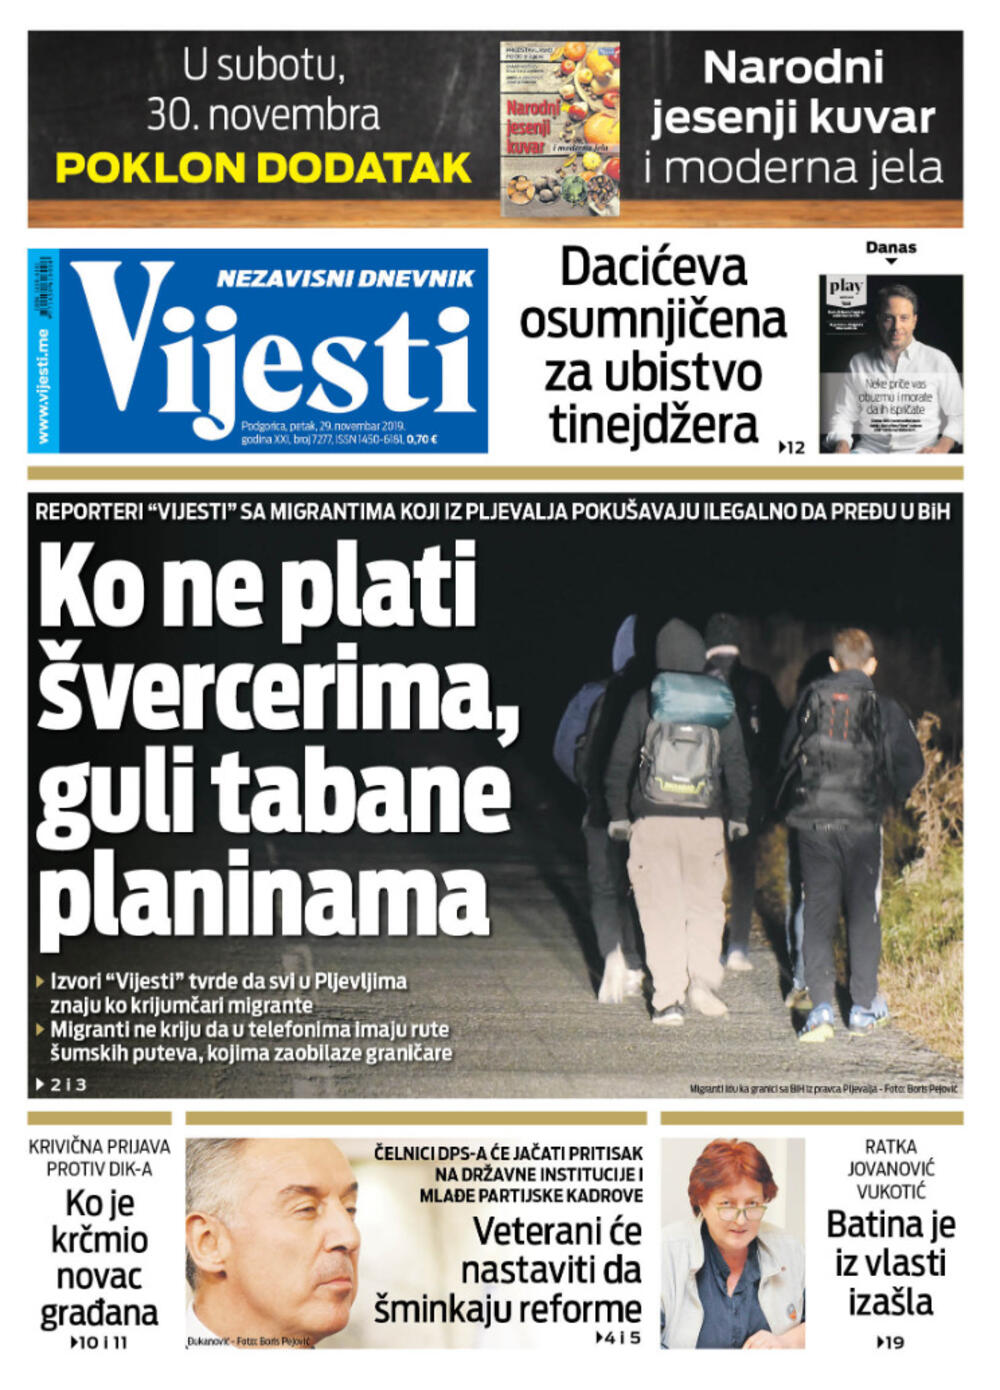 Naslovna strana "Vijesti" za 29. novembar 2019.